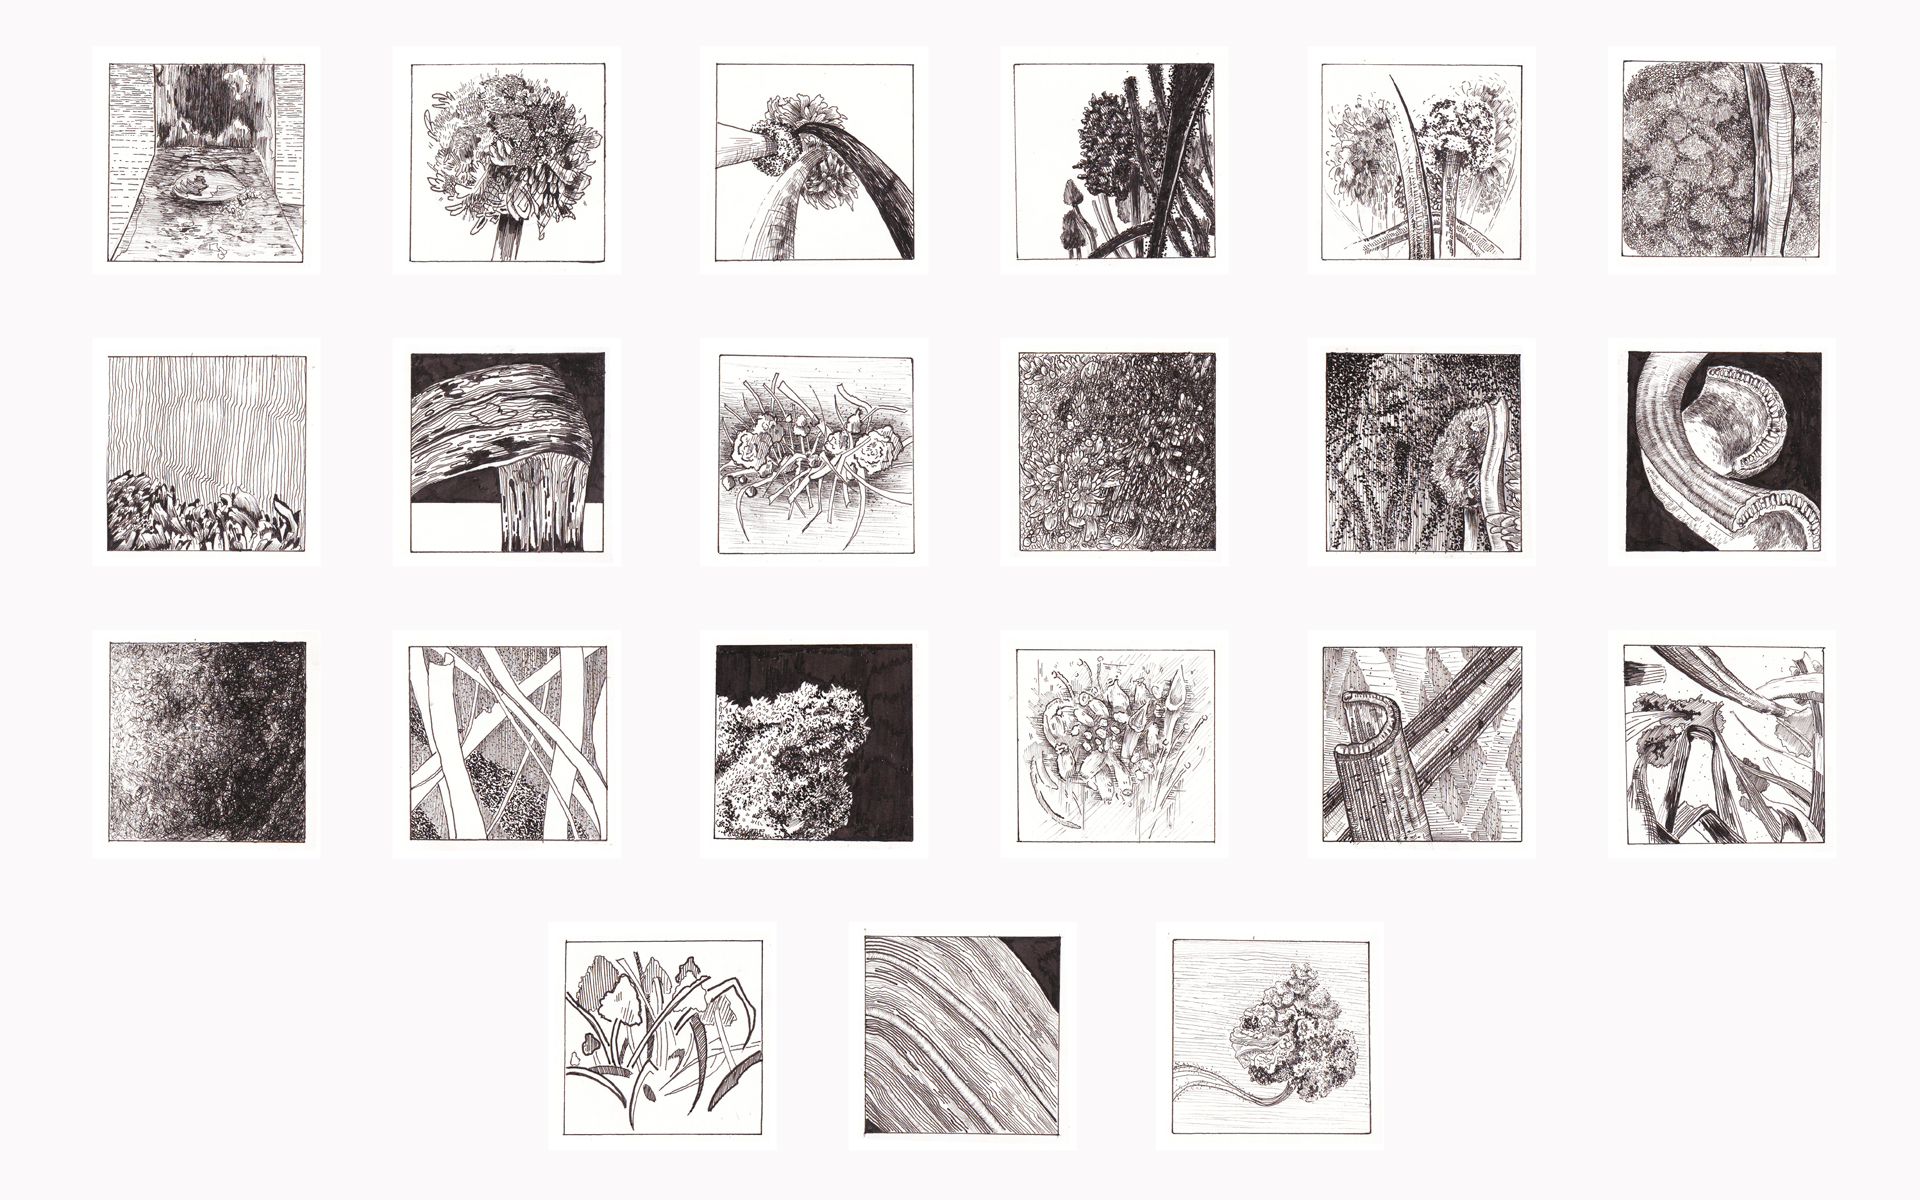  Dokumentacja zawiera kwadratowe rysunki wykonane za pomocą cienkopisu w czerni. Studium kwiatu. 